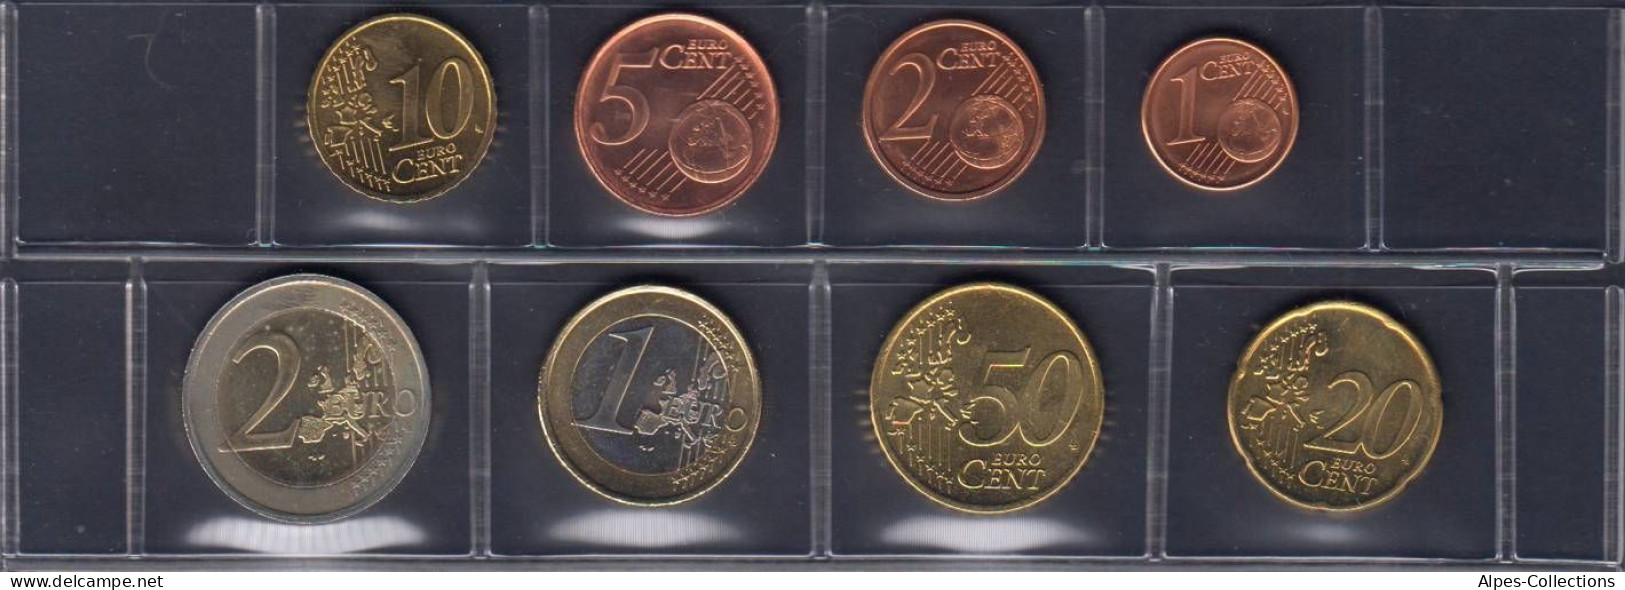 IRX2002.3 - SERIE IRLANDE - 2002 - 1 Cent à 2 Euros - Ireland